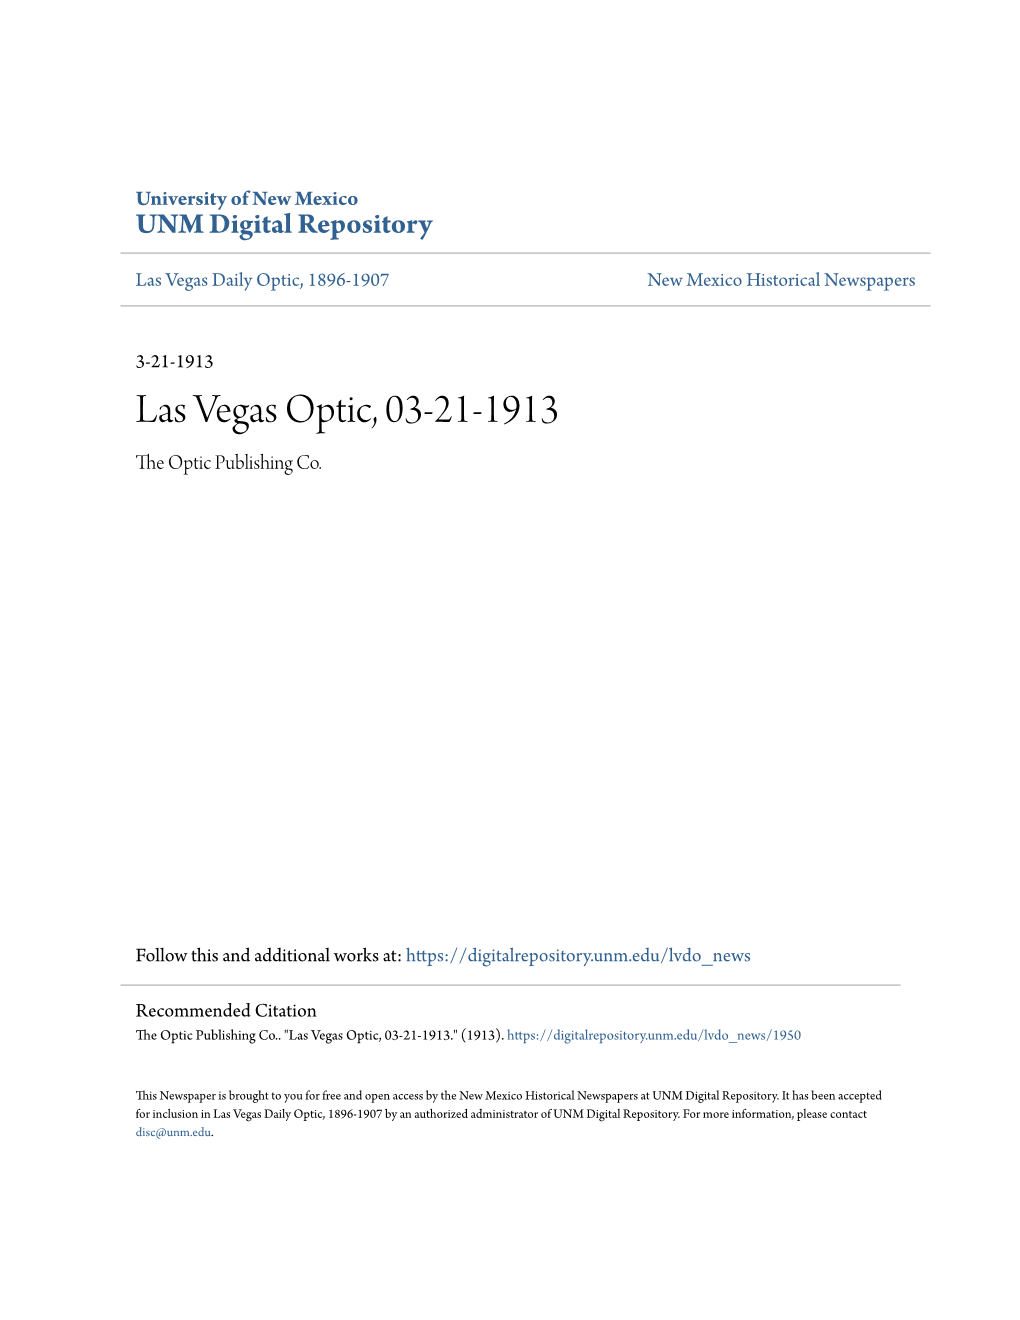 Las Vegas Optic, 03-21-1913 the Optic Publishing Co